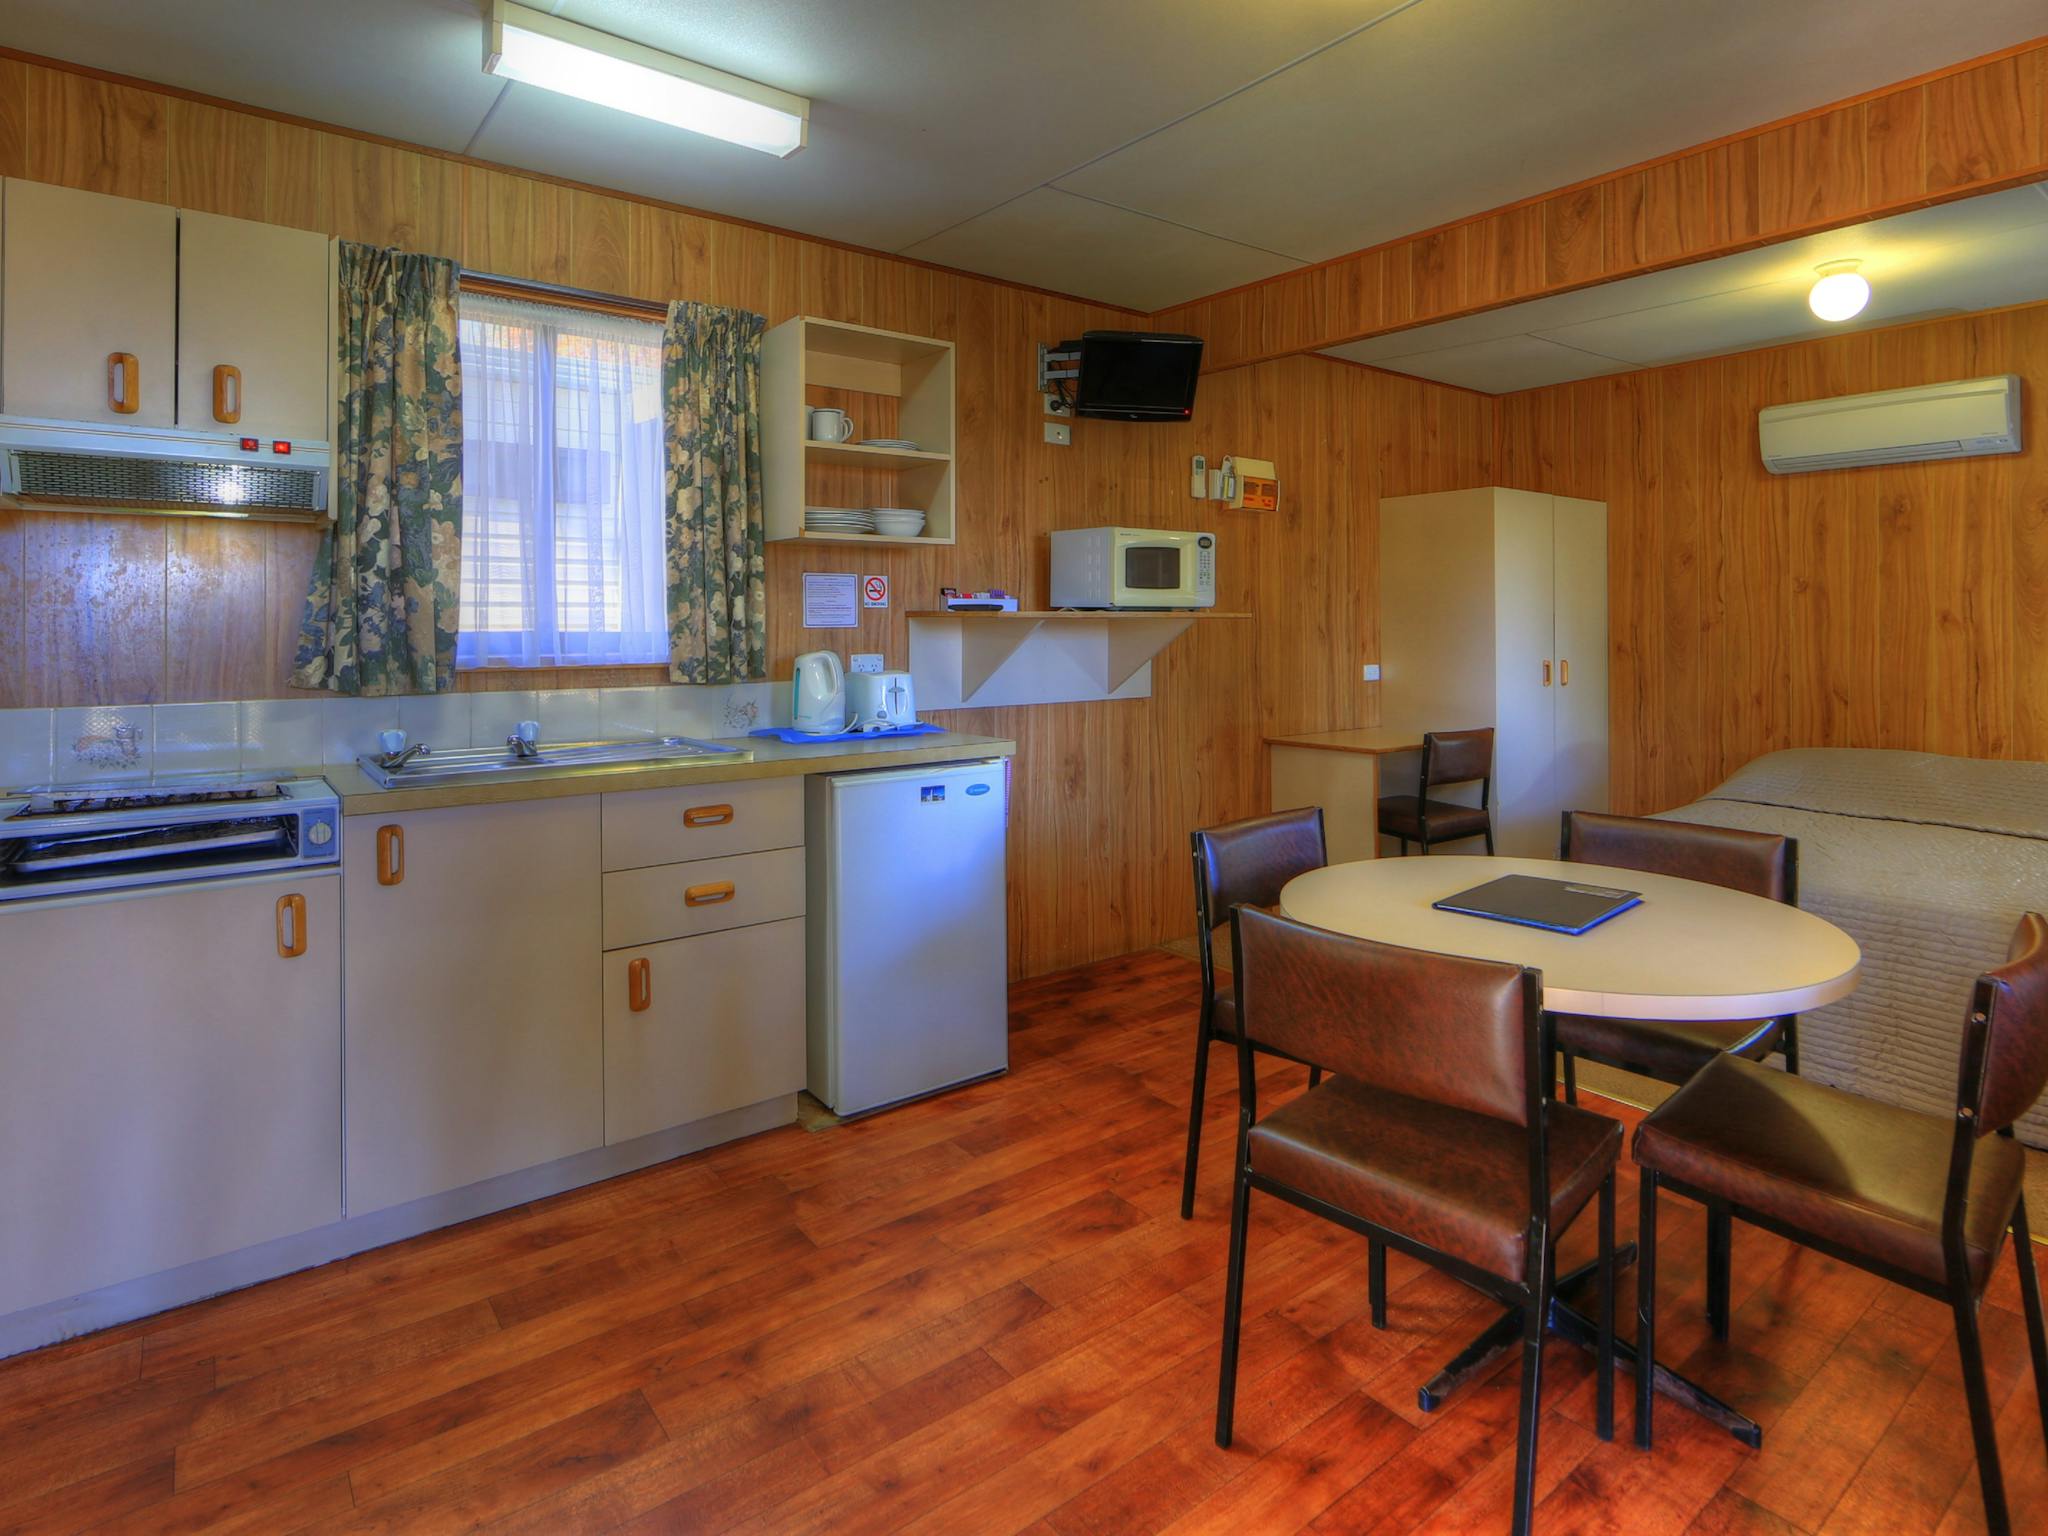 Budget cabin - kitchen